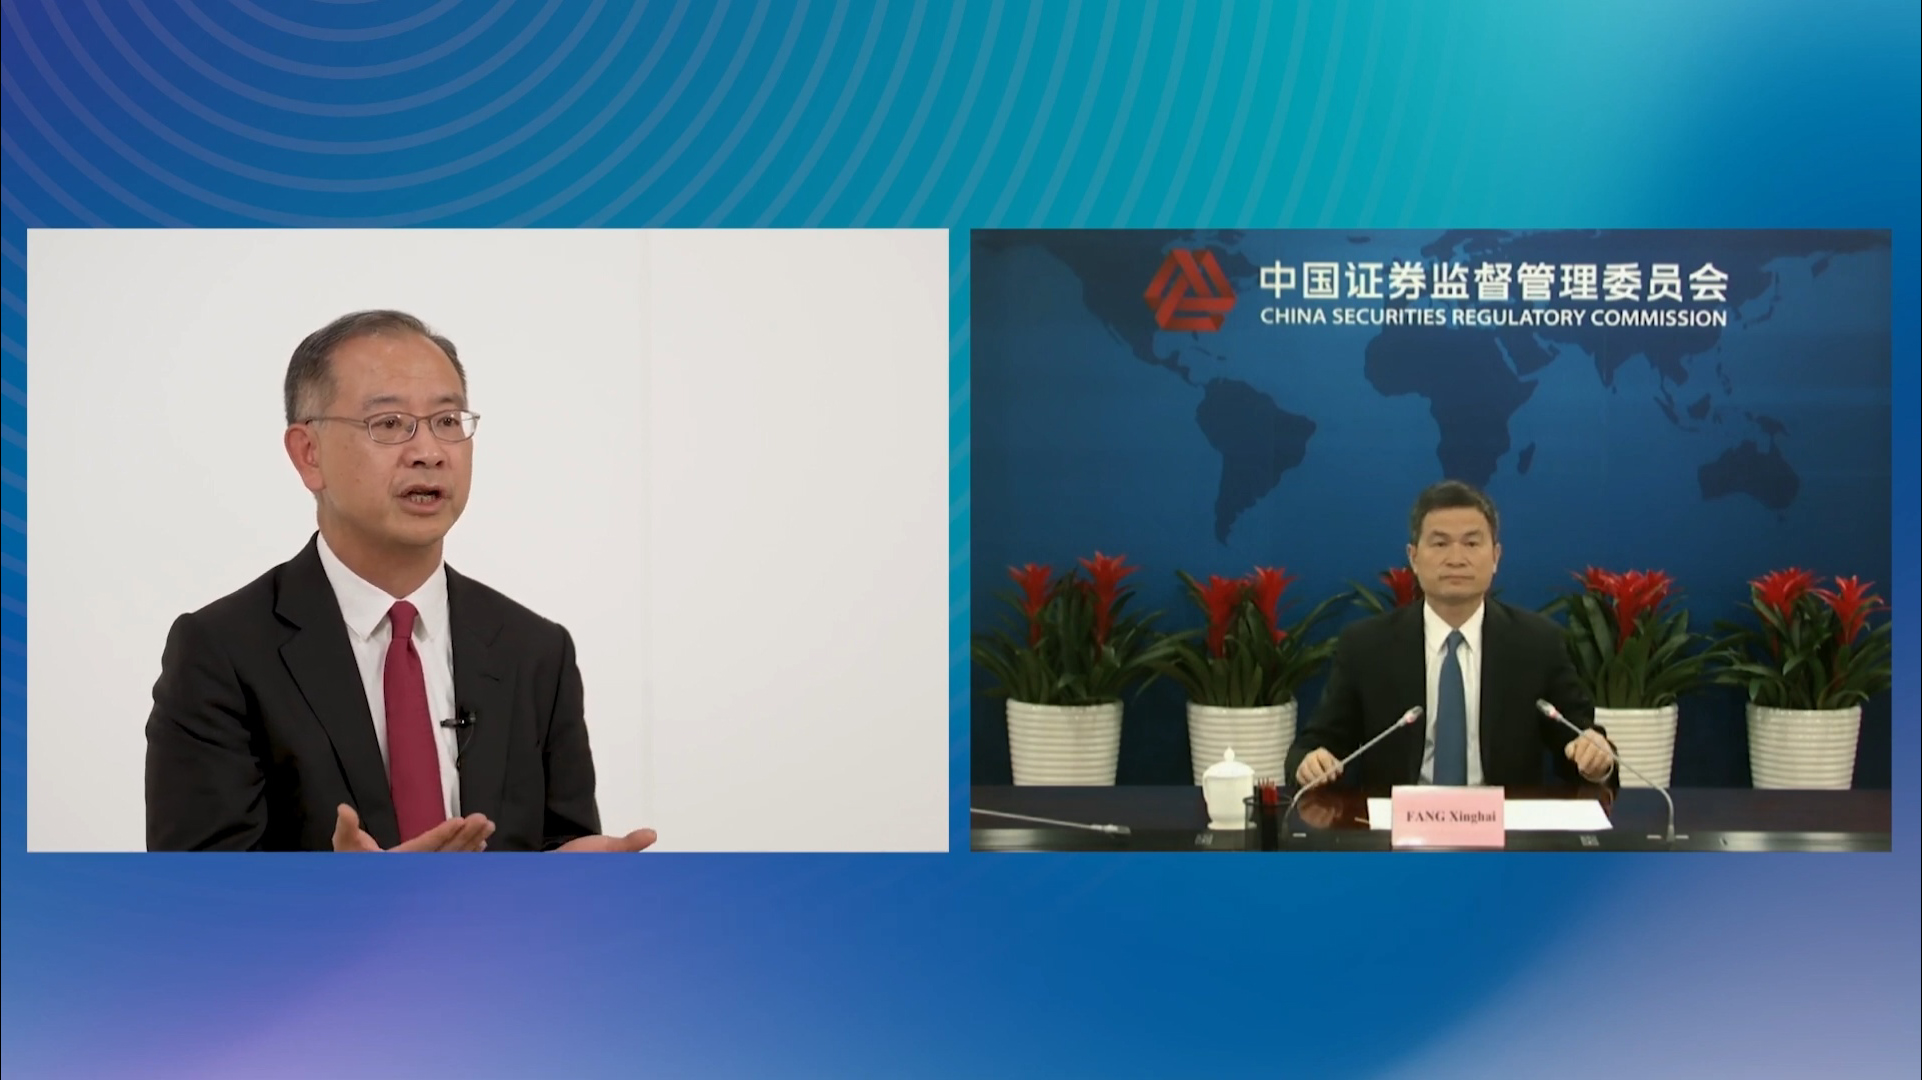 (左至右) 香港金融管理局总裁余伟文; 中国证券监督管理委员会副主席方星海